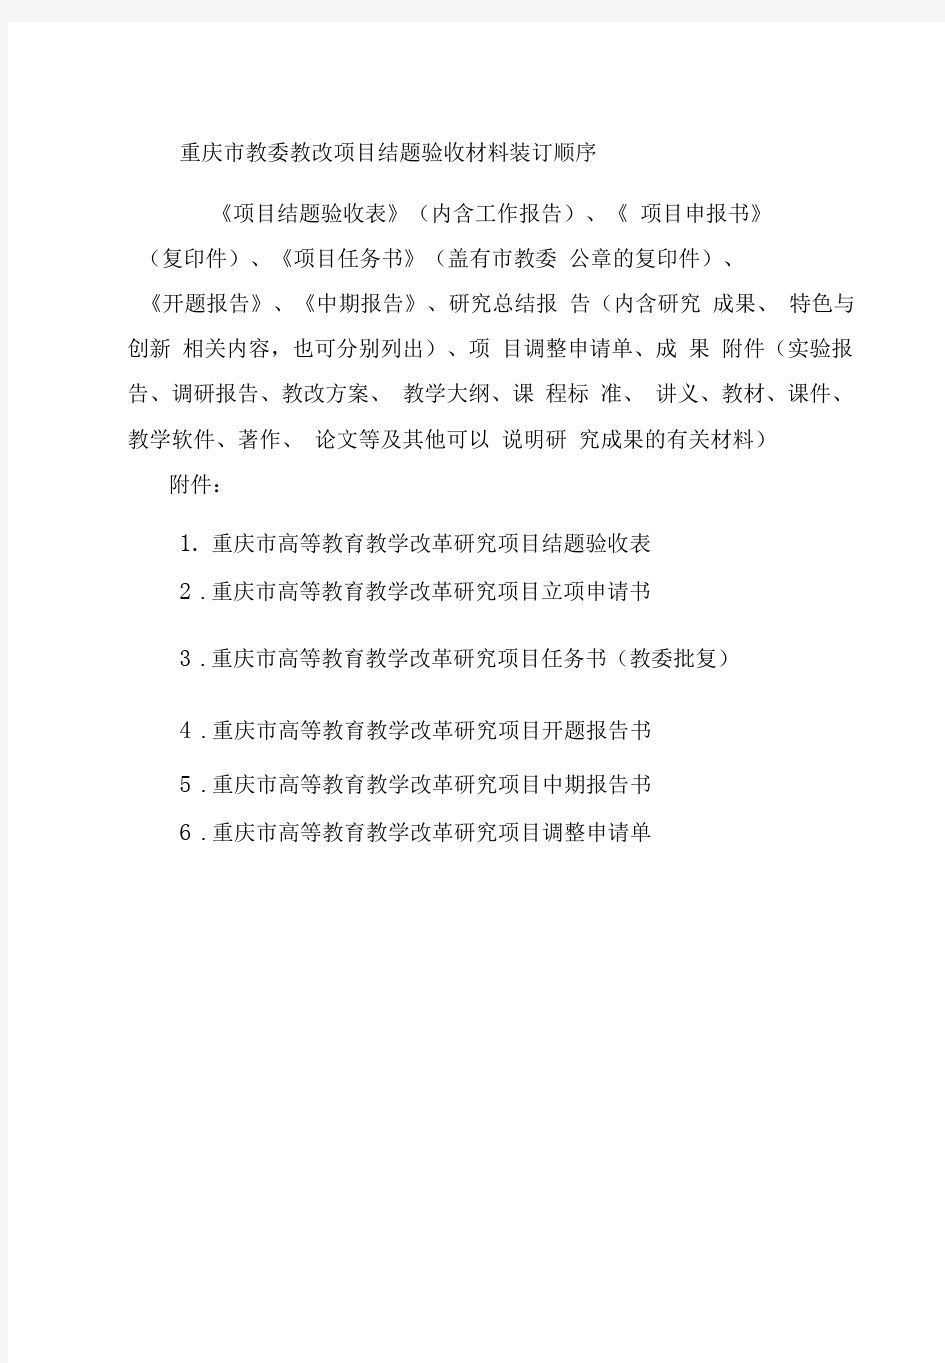 重庆教委教改项目结题验收材料装订顺序及样表